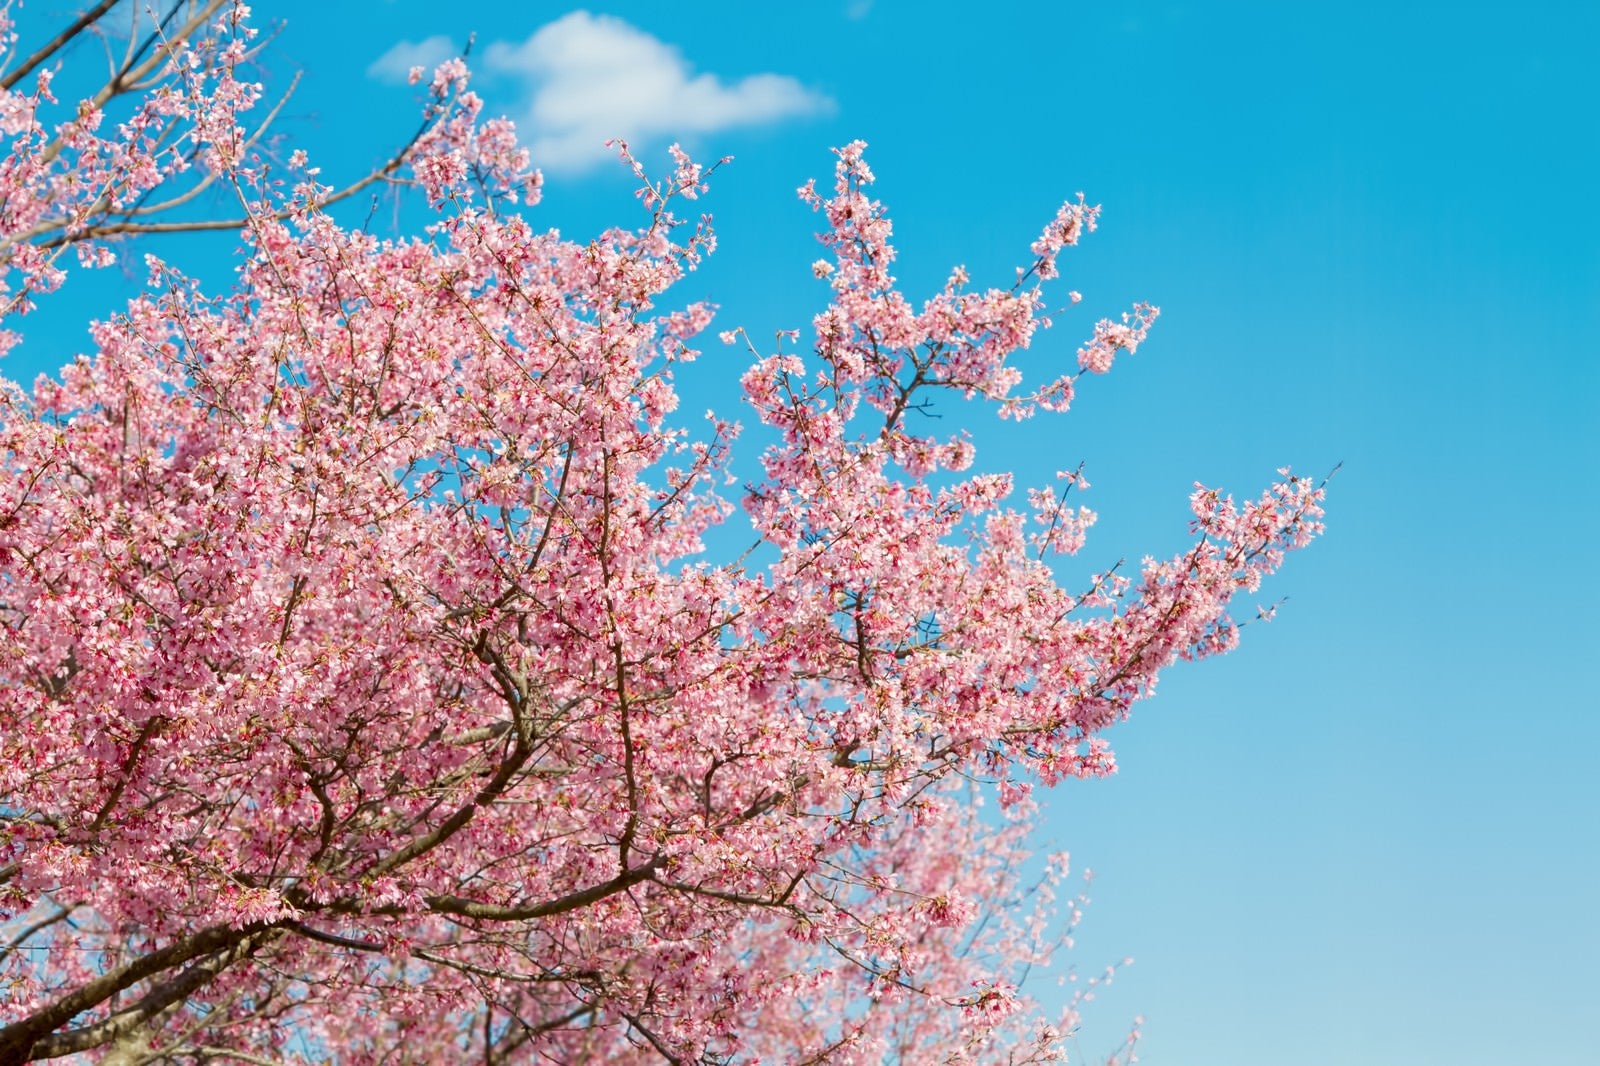 「青空と桜の木」の写真